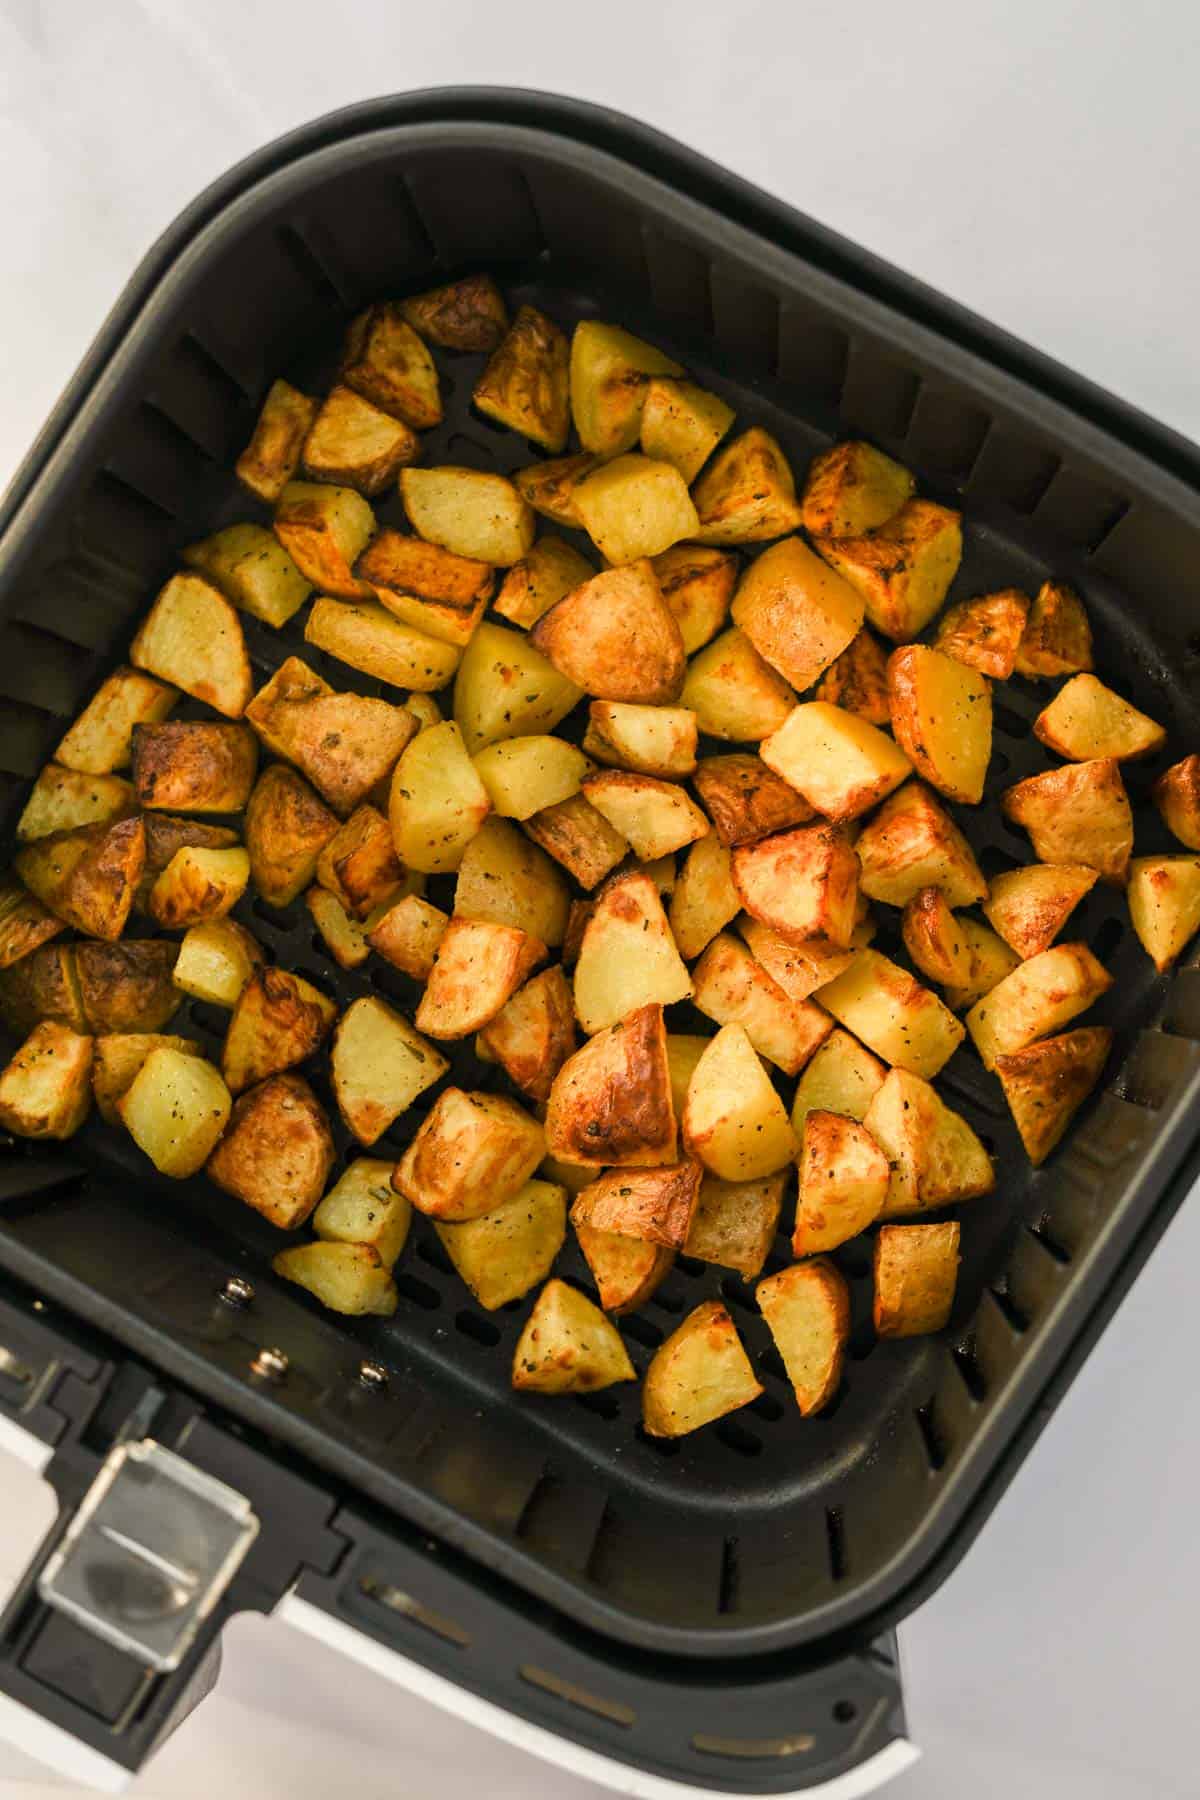 crispy roasted potatoes in air fryer basket.